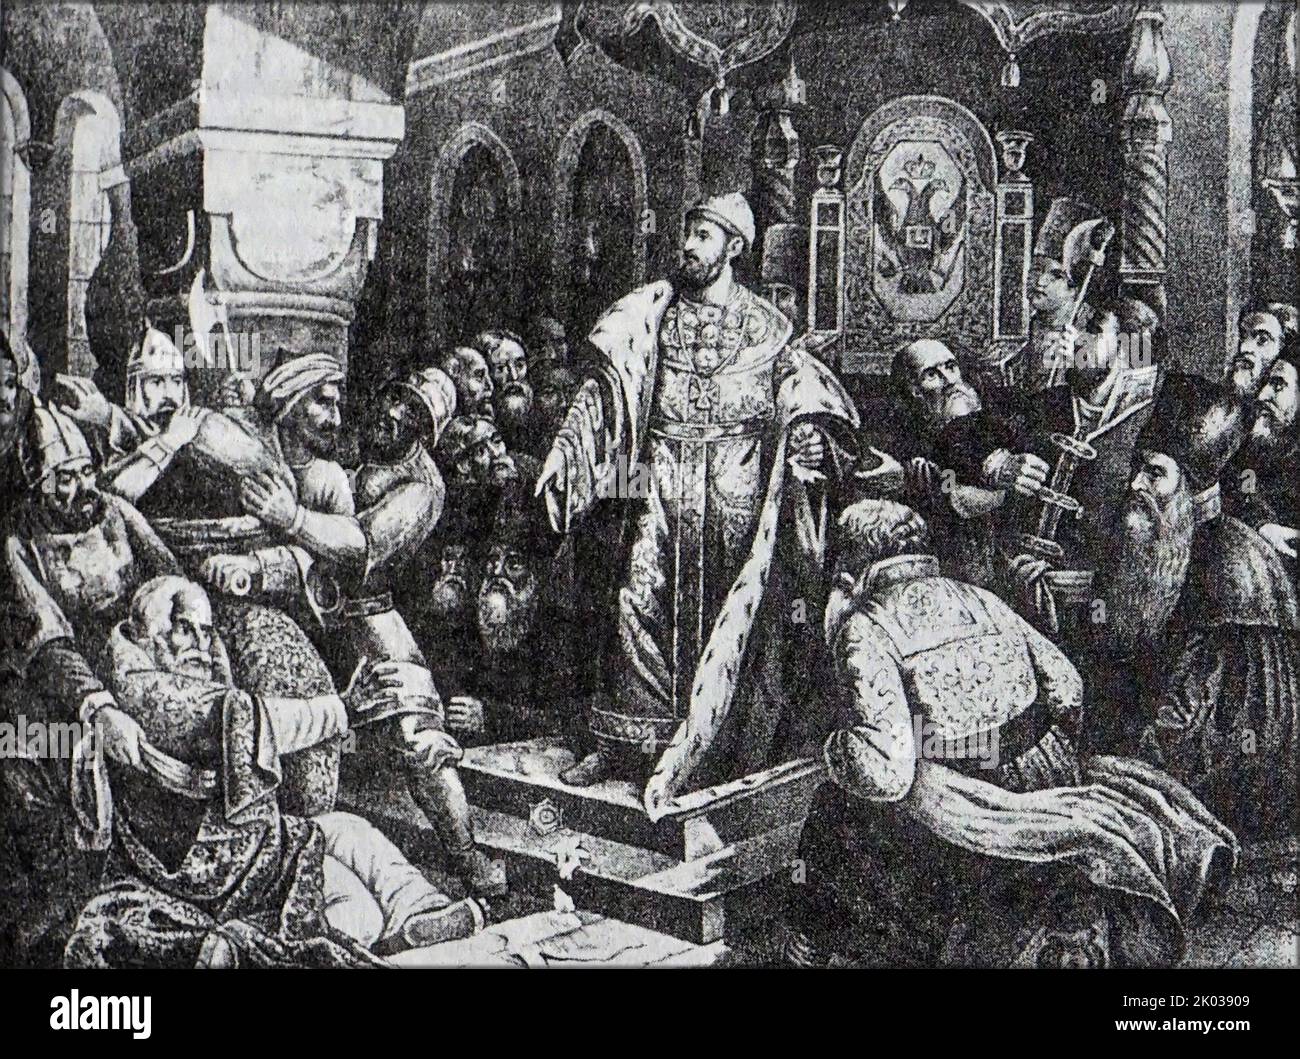 Ivan le troisième déchire la lettre du Khan exigeant un hommage. Ivan III Vasilyevitch (1440 - 1505), également connu sous le nom d'Ivan le Grand, était un Grand Prince de Moscou et un Grand Prince de tous les Rus. Ivan a servi comme codirigeant et régent pour son père aveugle Vasily II à partir de la mi-1450s avant qu'il monte officiellement le trône en 1462. En 1476, Ivan refusa de rendre l'hommage coutumier au grand Khan Ahmed, et en 1480 Ahmed Khan organisa une campagne militaire contre Muscovy. Banque D'Images